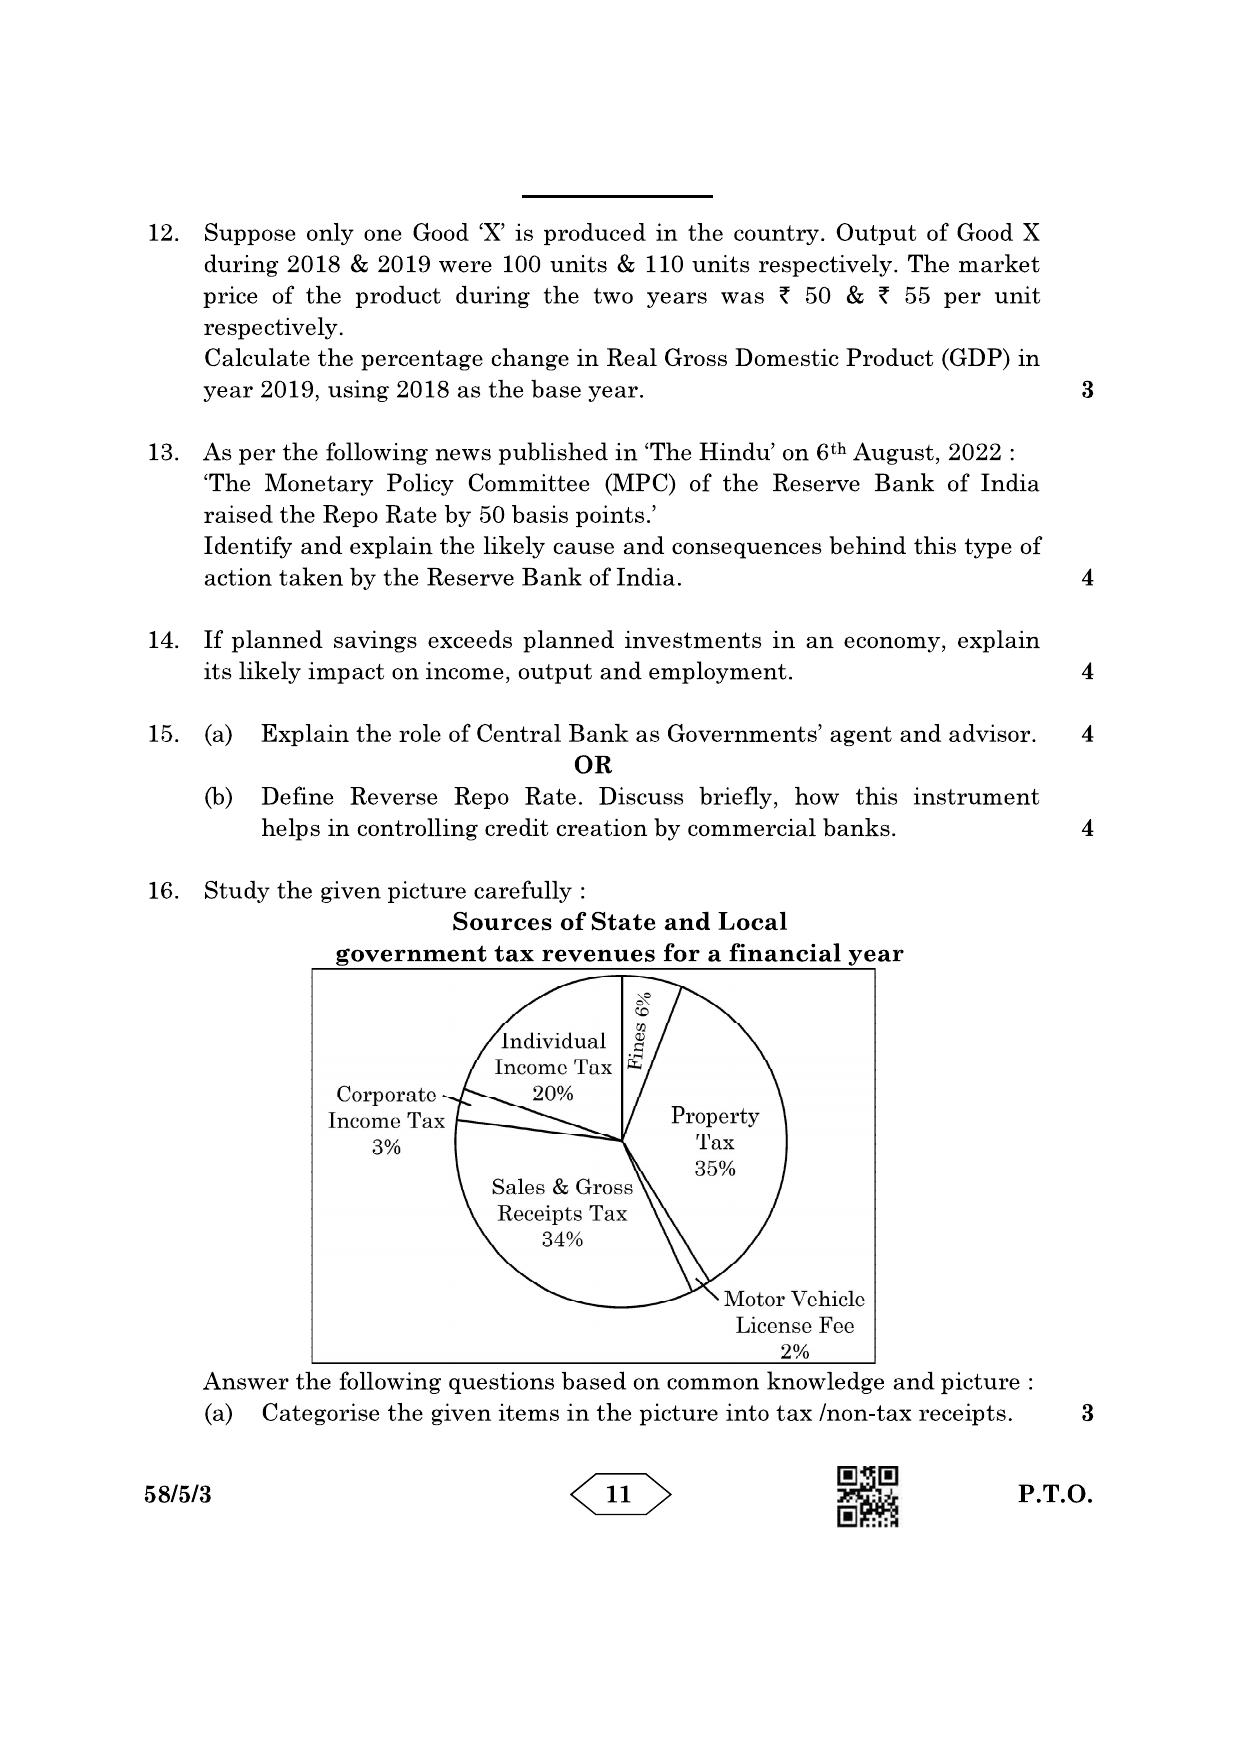 CBSE Class 12 58-5-3 Economics 2023 Question Paper - Page 11